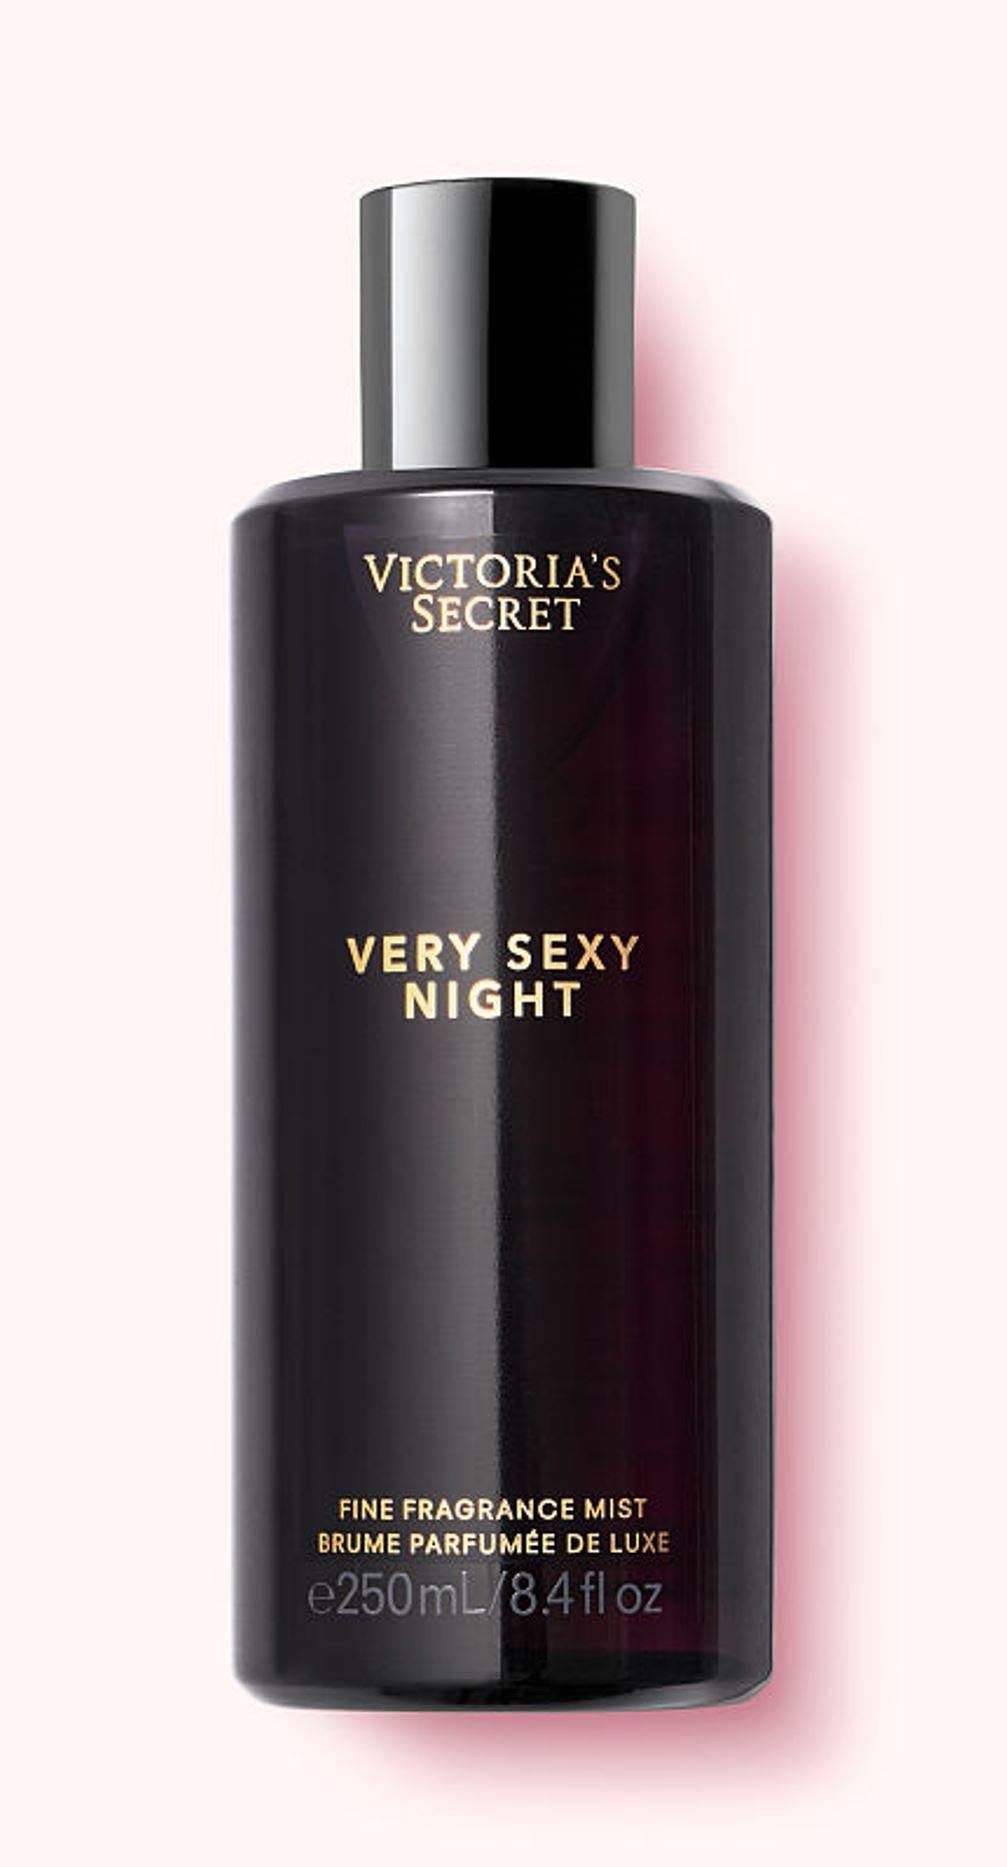 NÊN mua Body Mist nào của Victoria’s Secret?